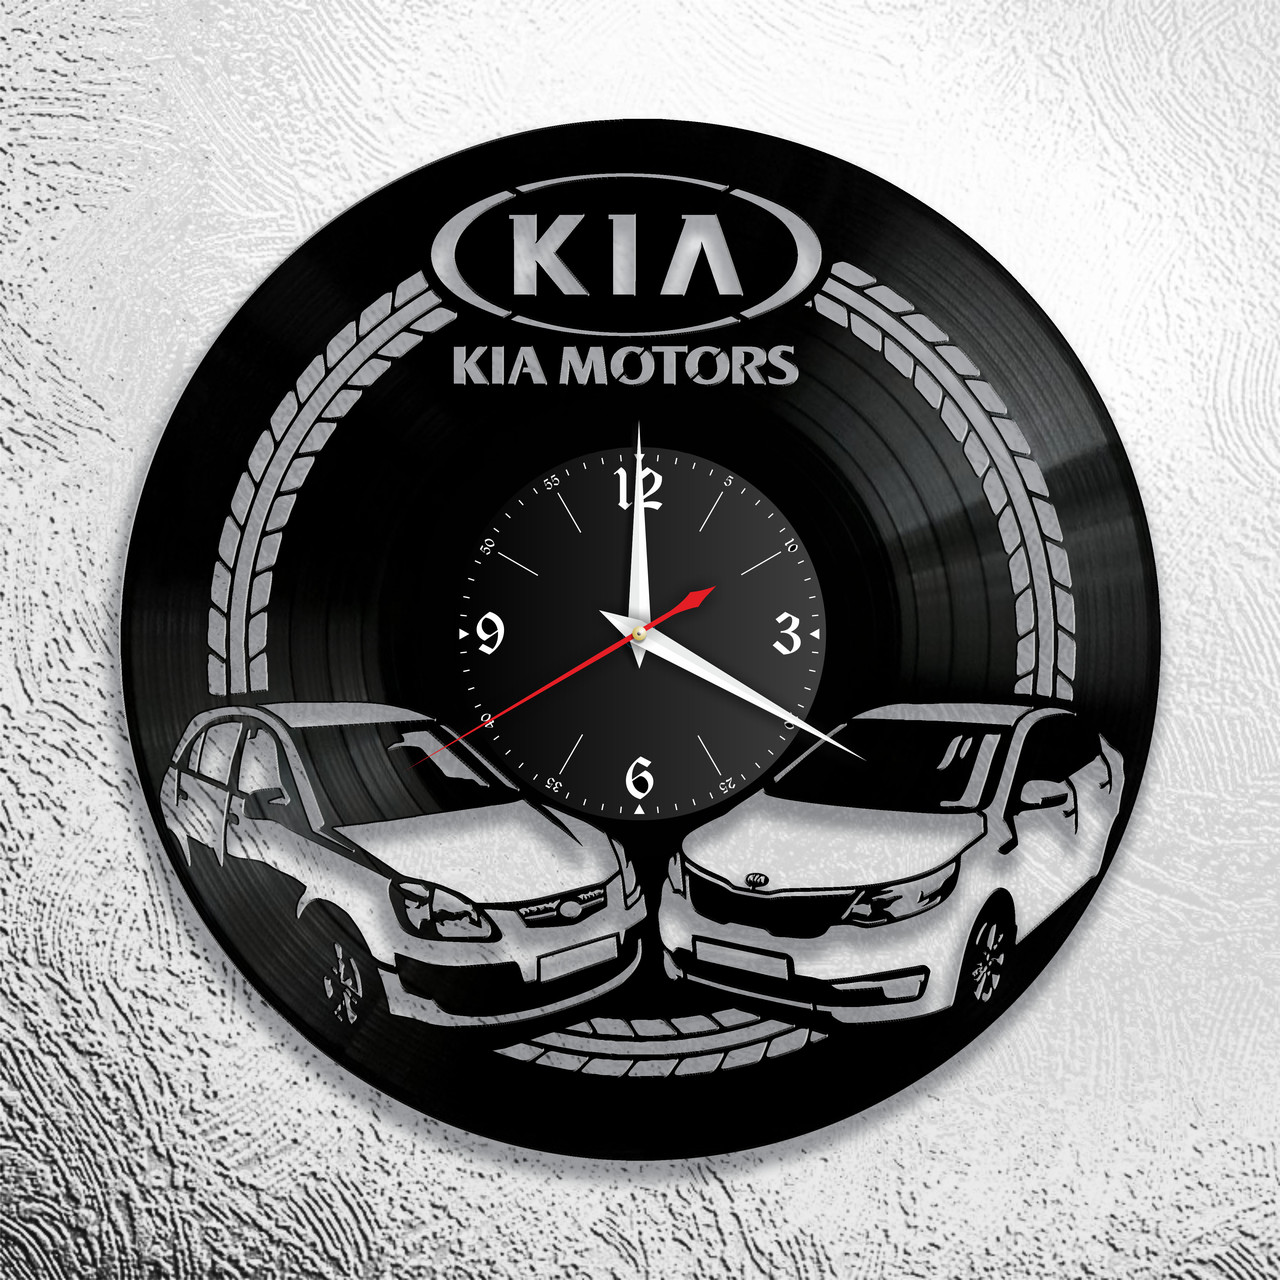 Оригинальные часы из виниловых пластинок  "KIA" версия 1